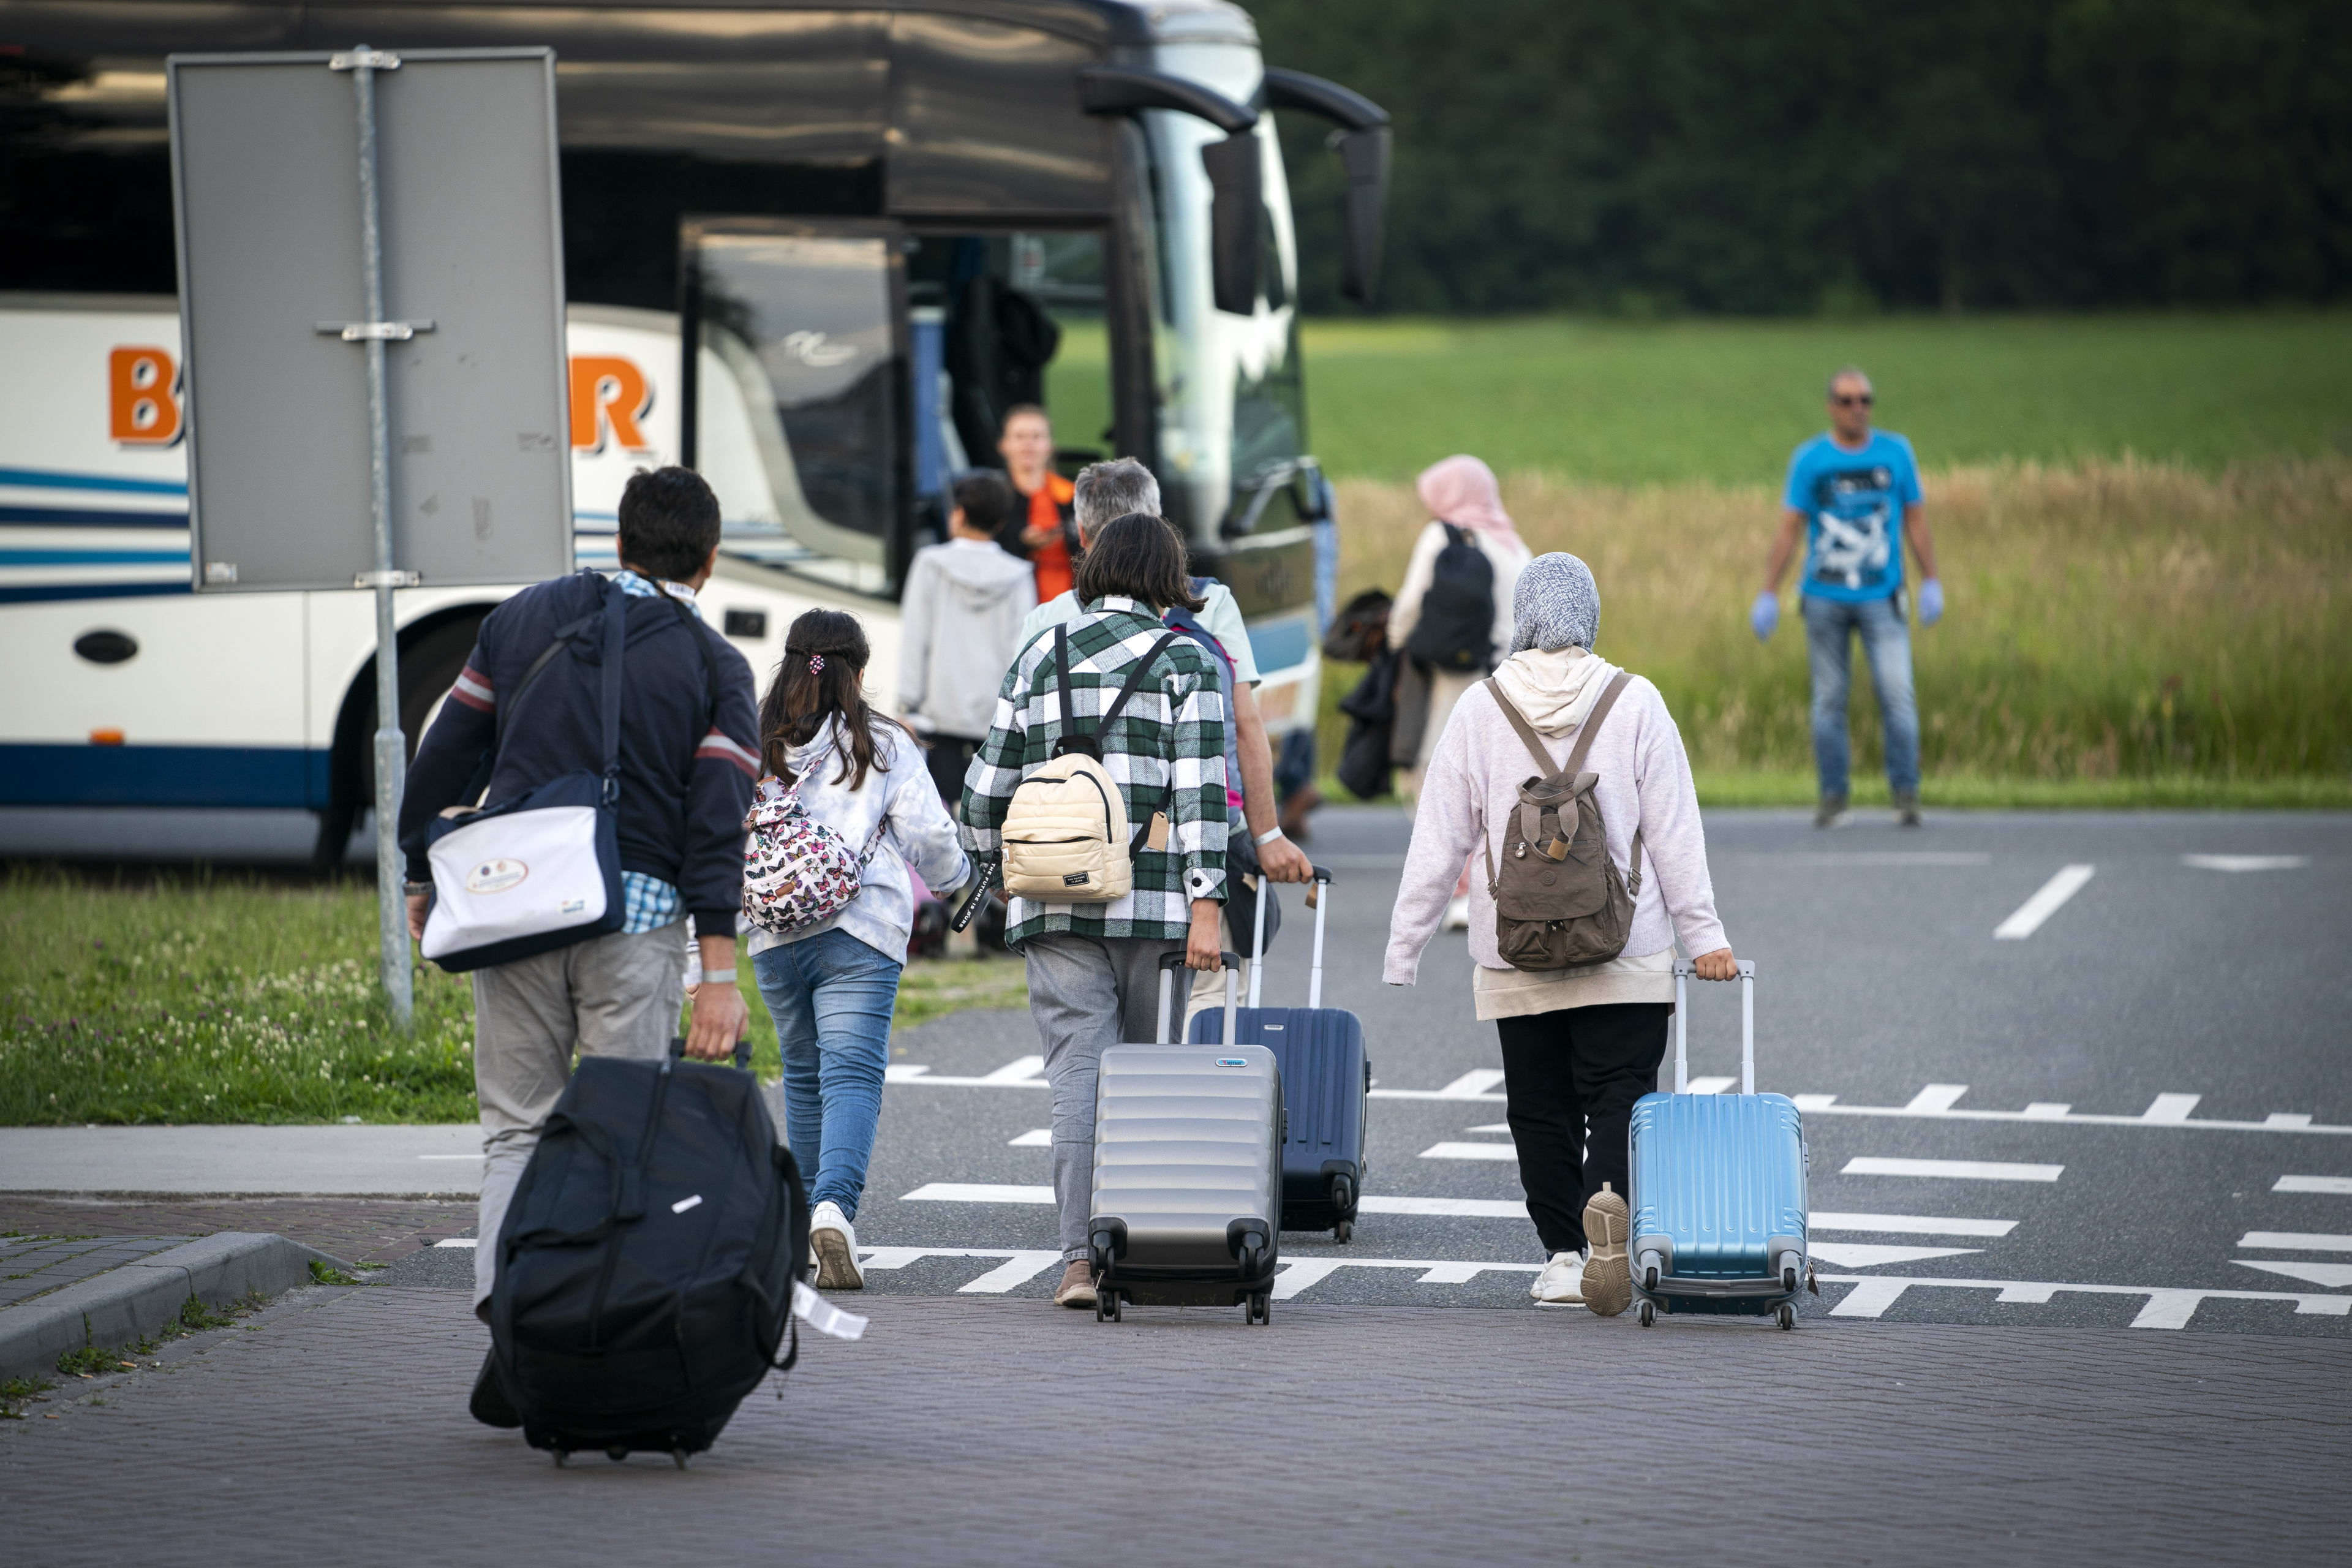 VluchtelingenWerk Nederland pleit voor meer azc's in Zeeland